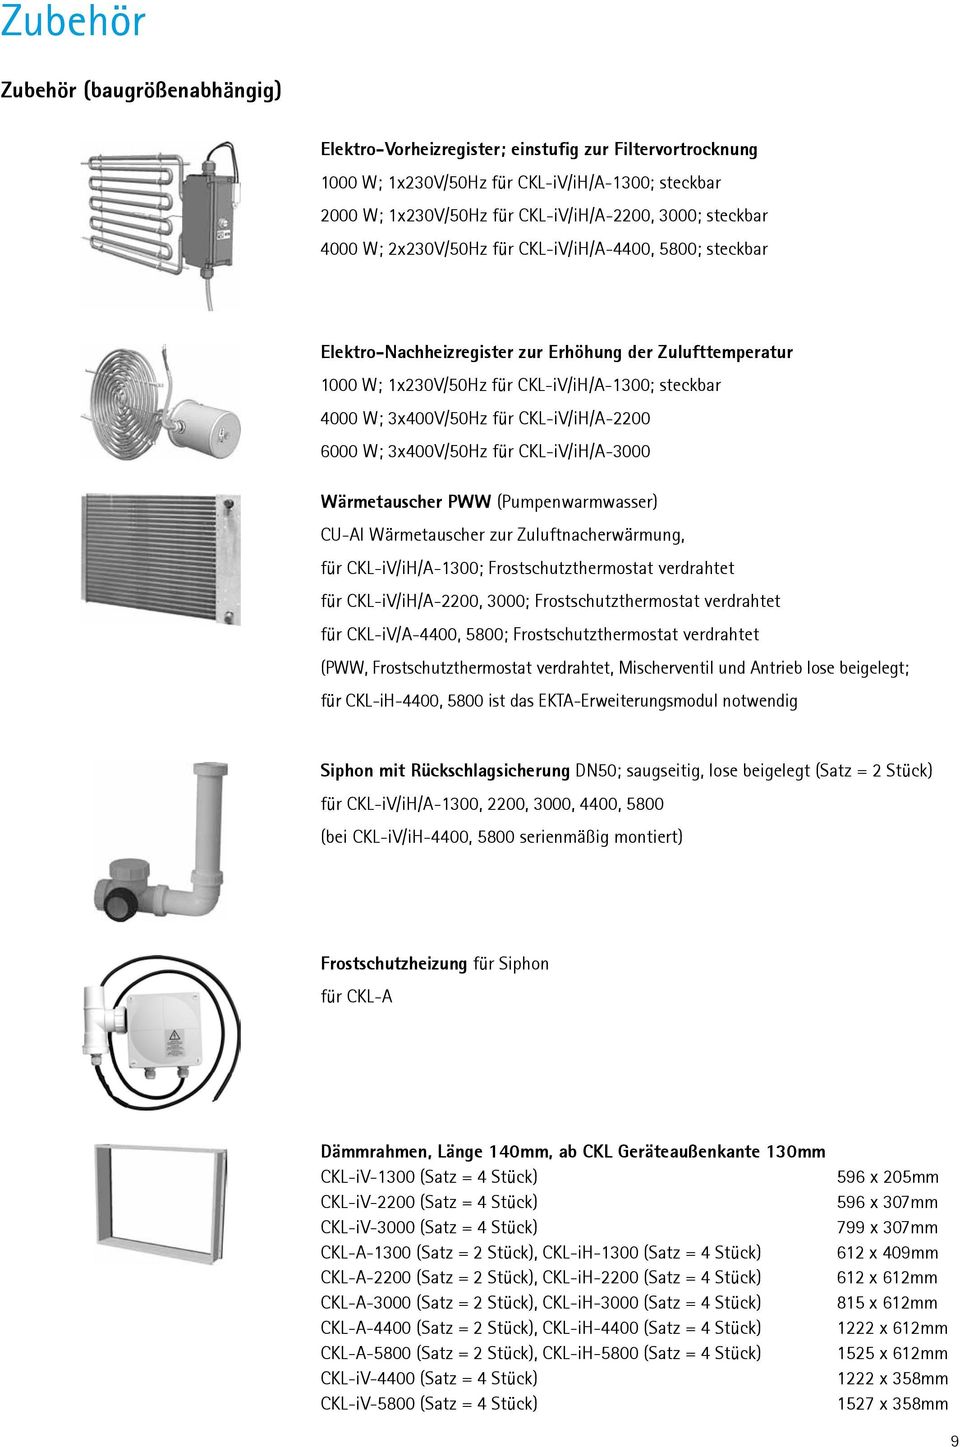 0 W; 3xV/50Hz für CKL-iV/iH/A-3000 Wärmetauscher PWW (Pumpenwarmwasser) CU-Al Wärmetauscher zur nacherwärmung, für CKL-iV/iH/A-1300; Frostschutzthermostat verdrahtet für CKL-iV/iH/A-2200, 3000;